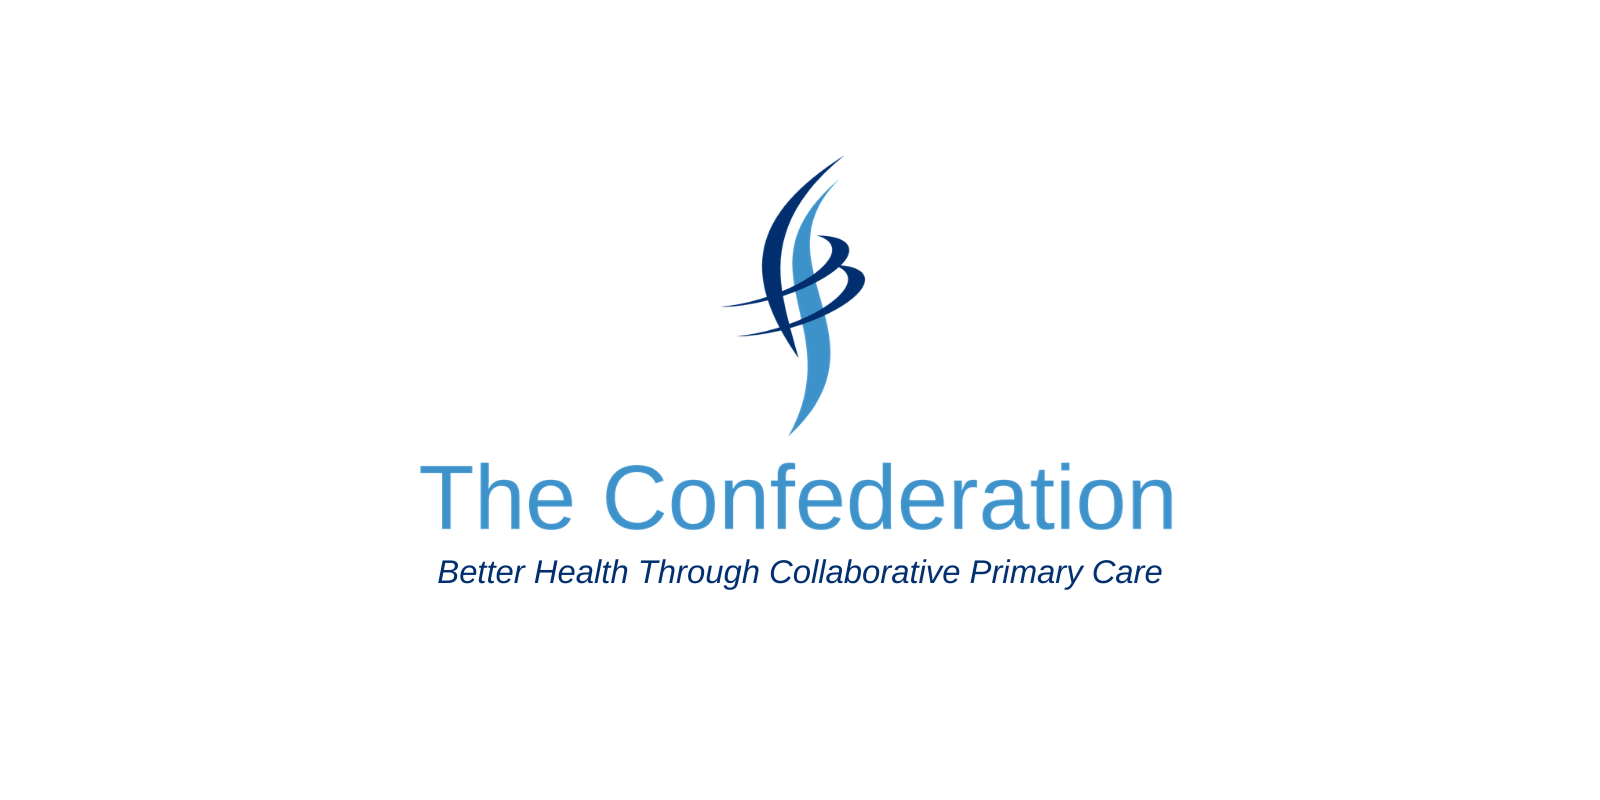 The Confederation logo